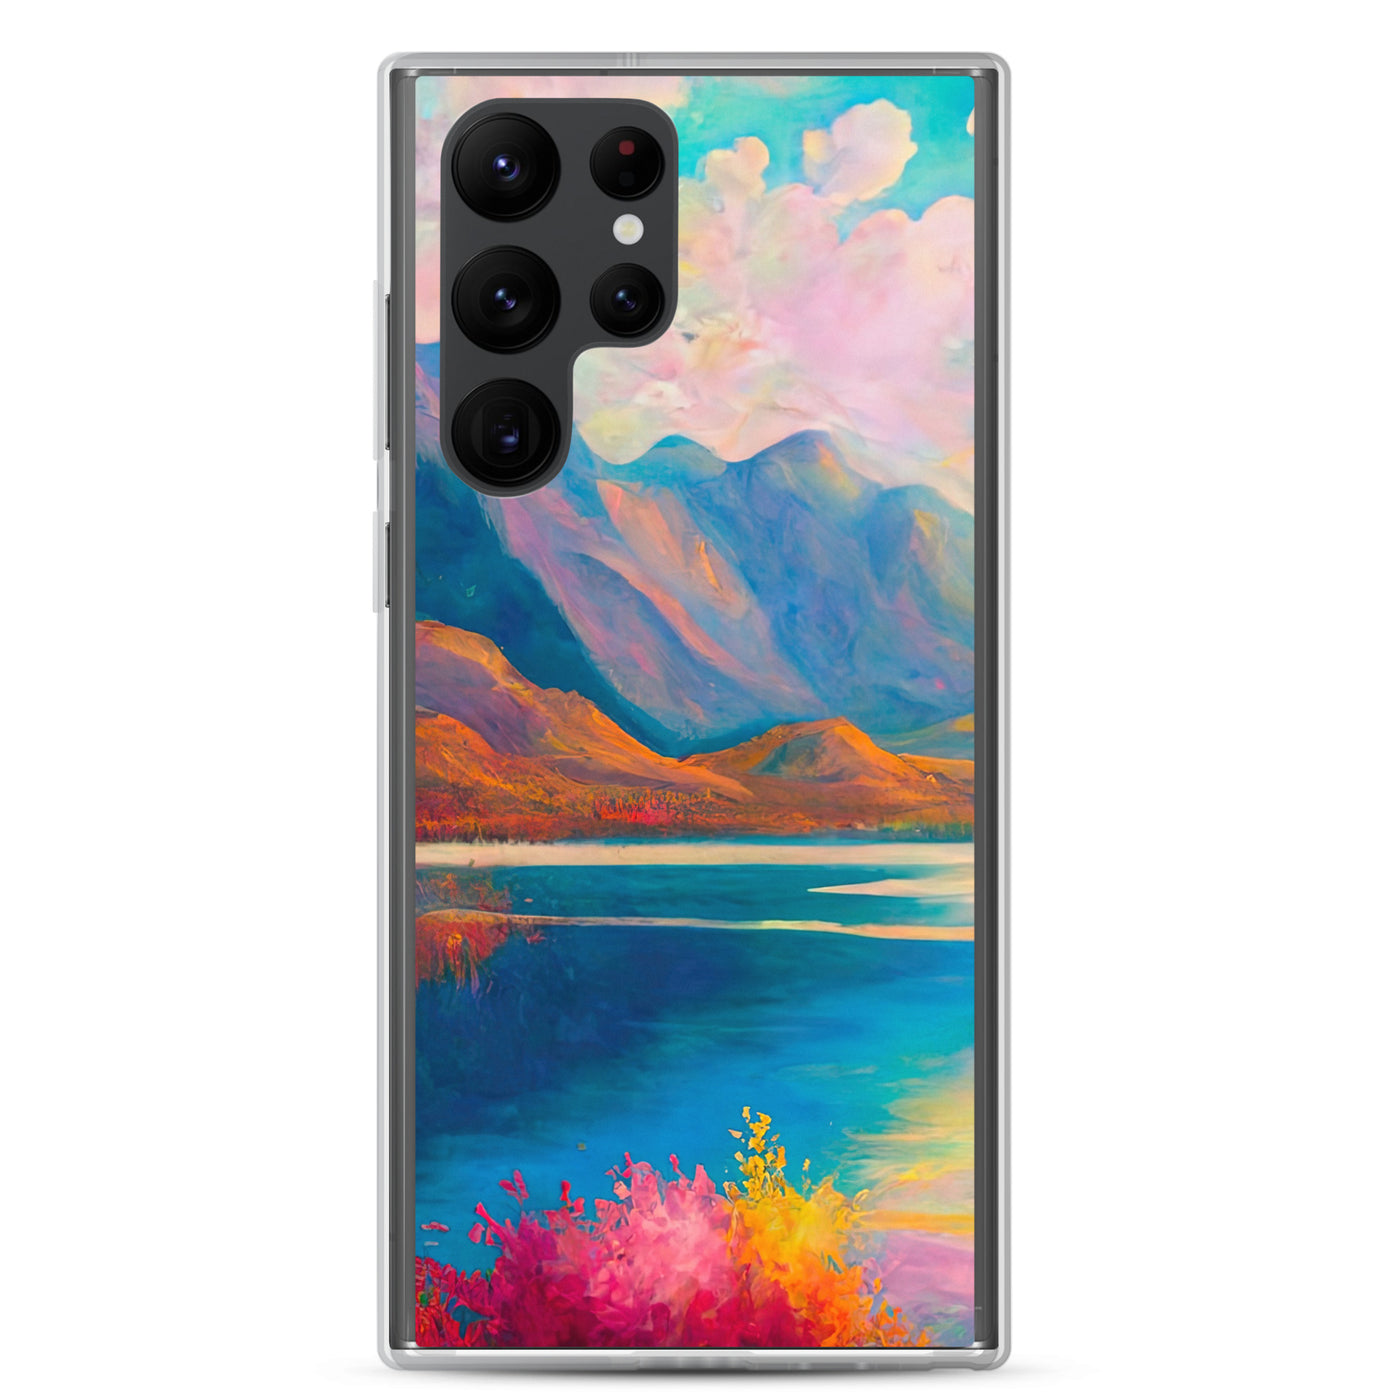 Berglandschaft und Bergsee - Farbige Ölmalerei - Samsung Schutzhülle (durchsichtig) berge xxx Samsung Galaxy S22 Ultra